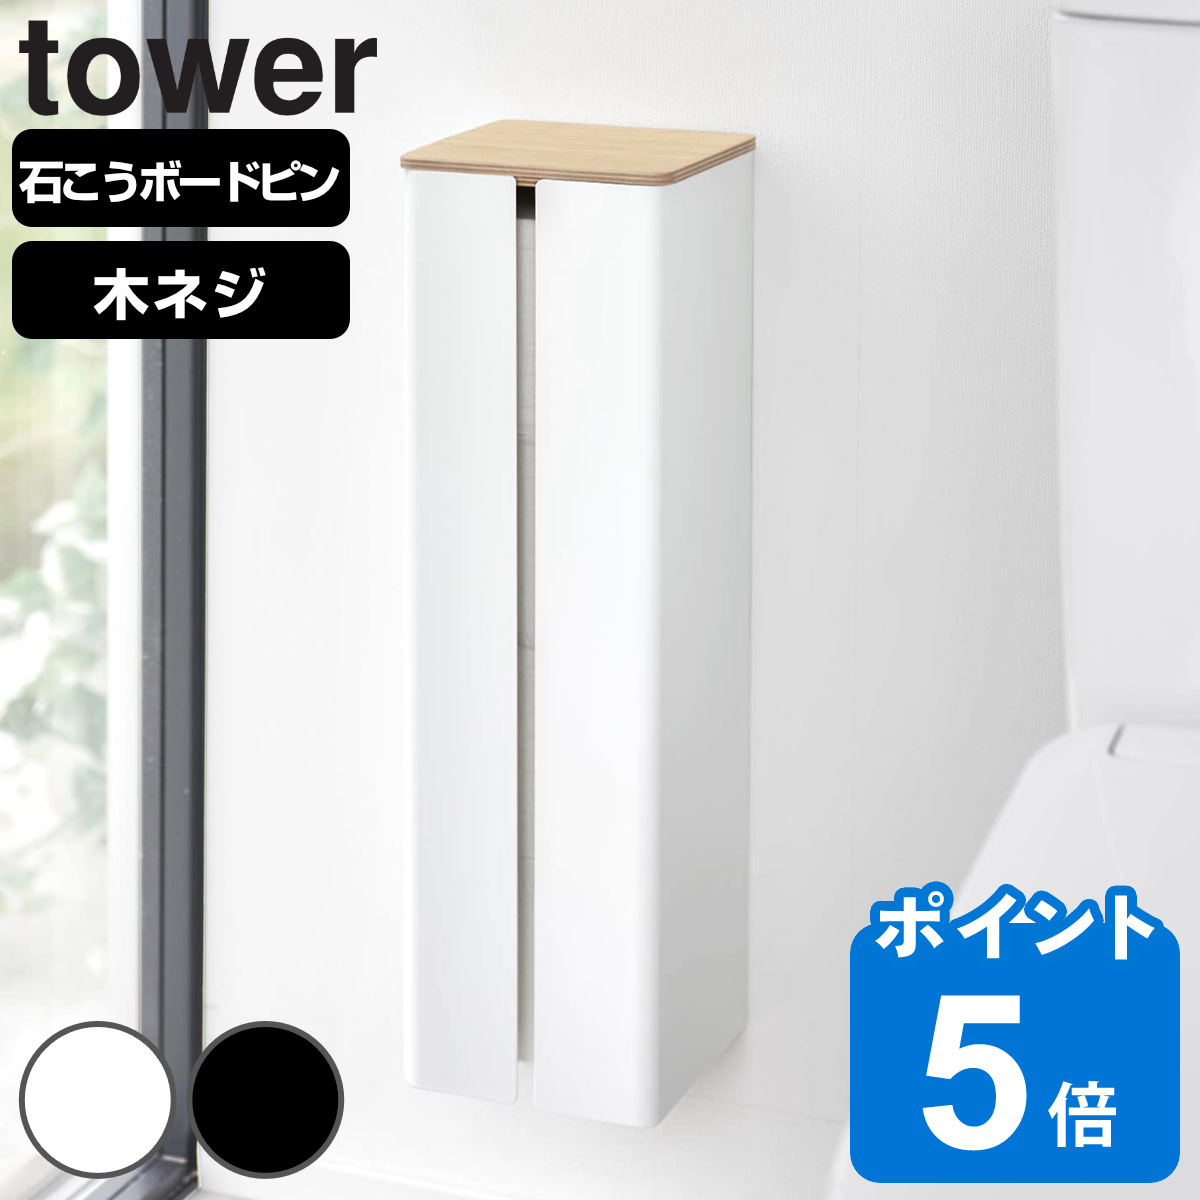 山崎実業 tower 石こうボード壁対応隠せるトイレットペーパーホルダー タワー